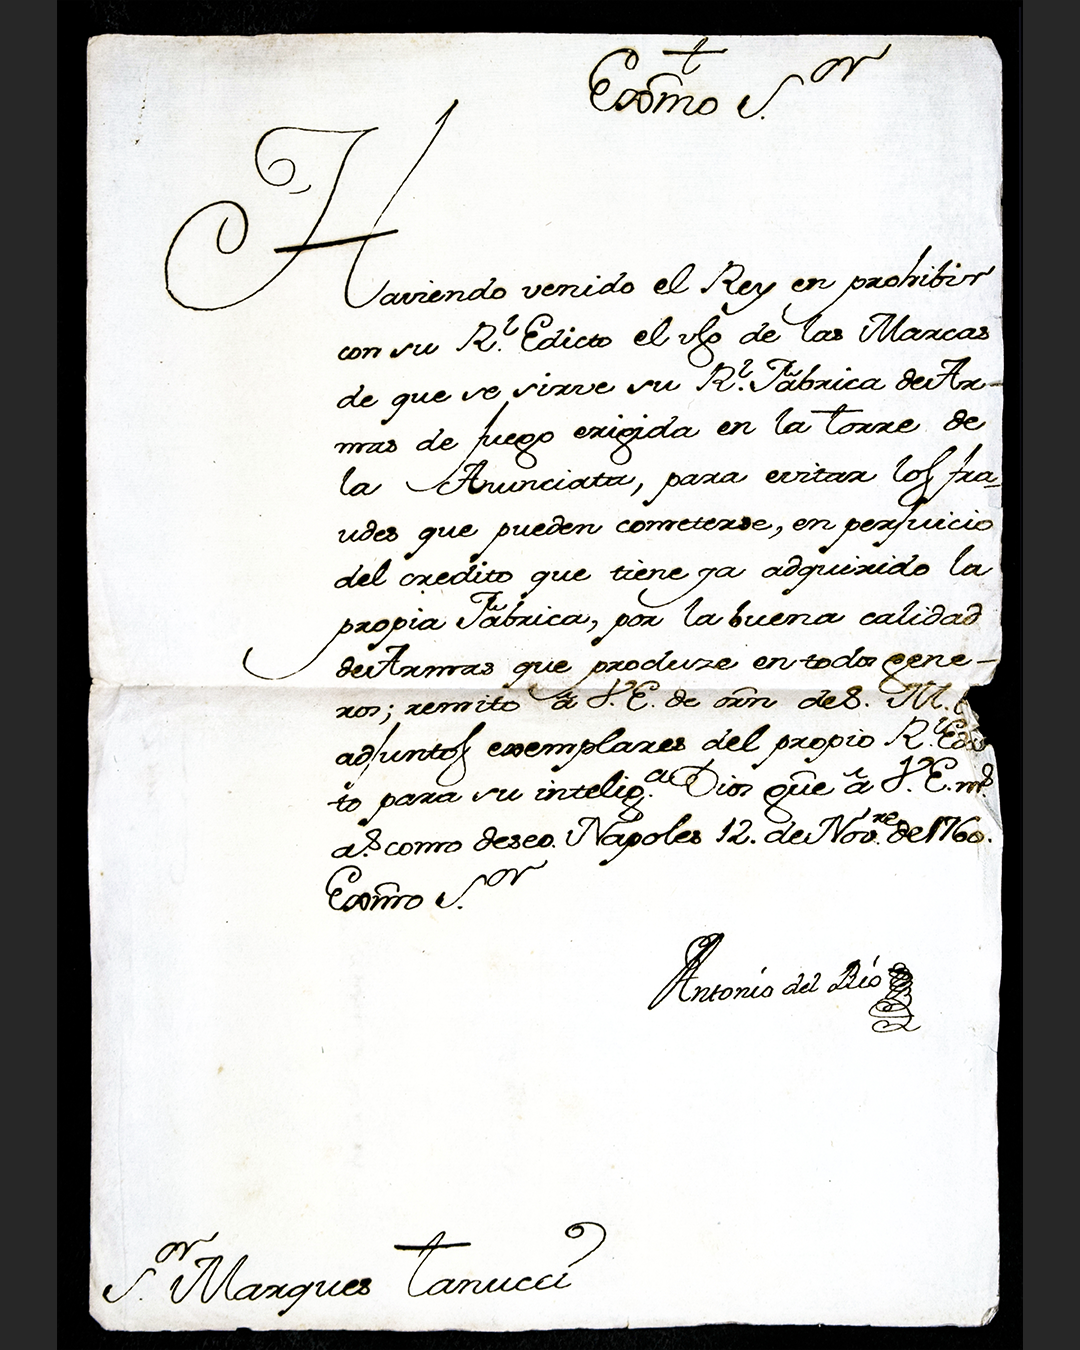 Dispaccio di trasmissione del Decreto manoscritto in spagnolo